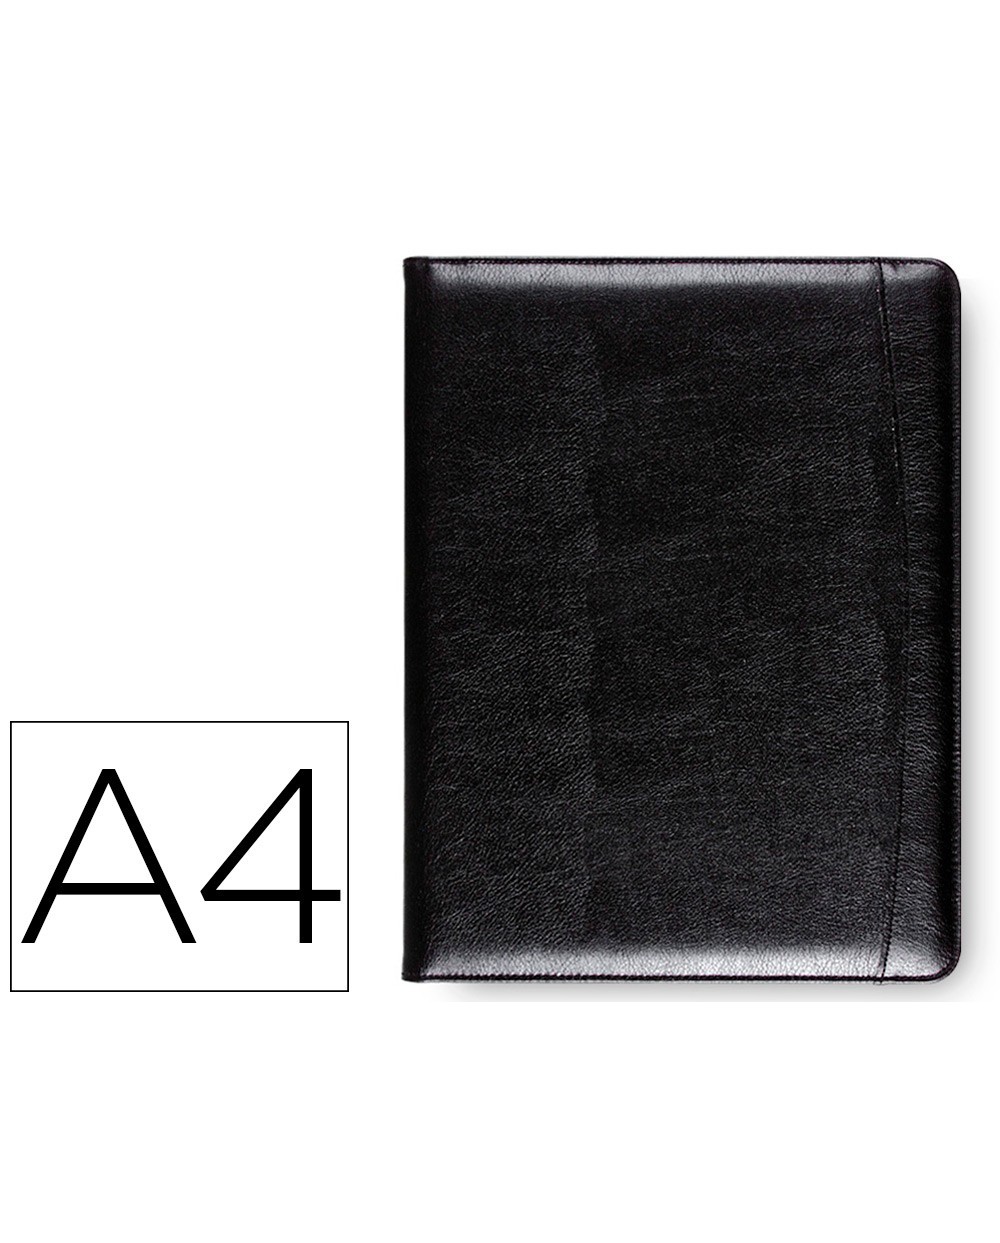 Carpeta portafolios 80 728k negra 320x250 mm sin cremallera sin asa con departmentos interiores